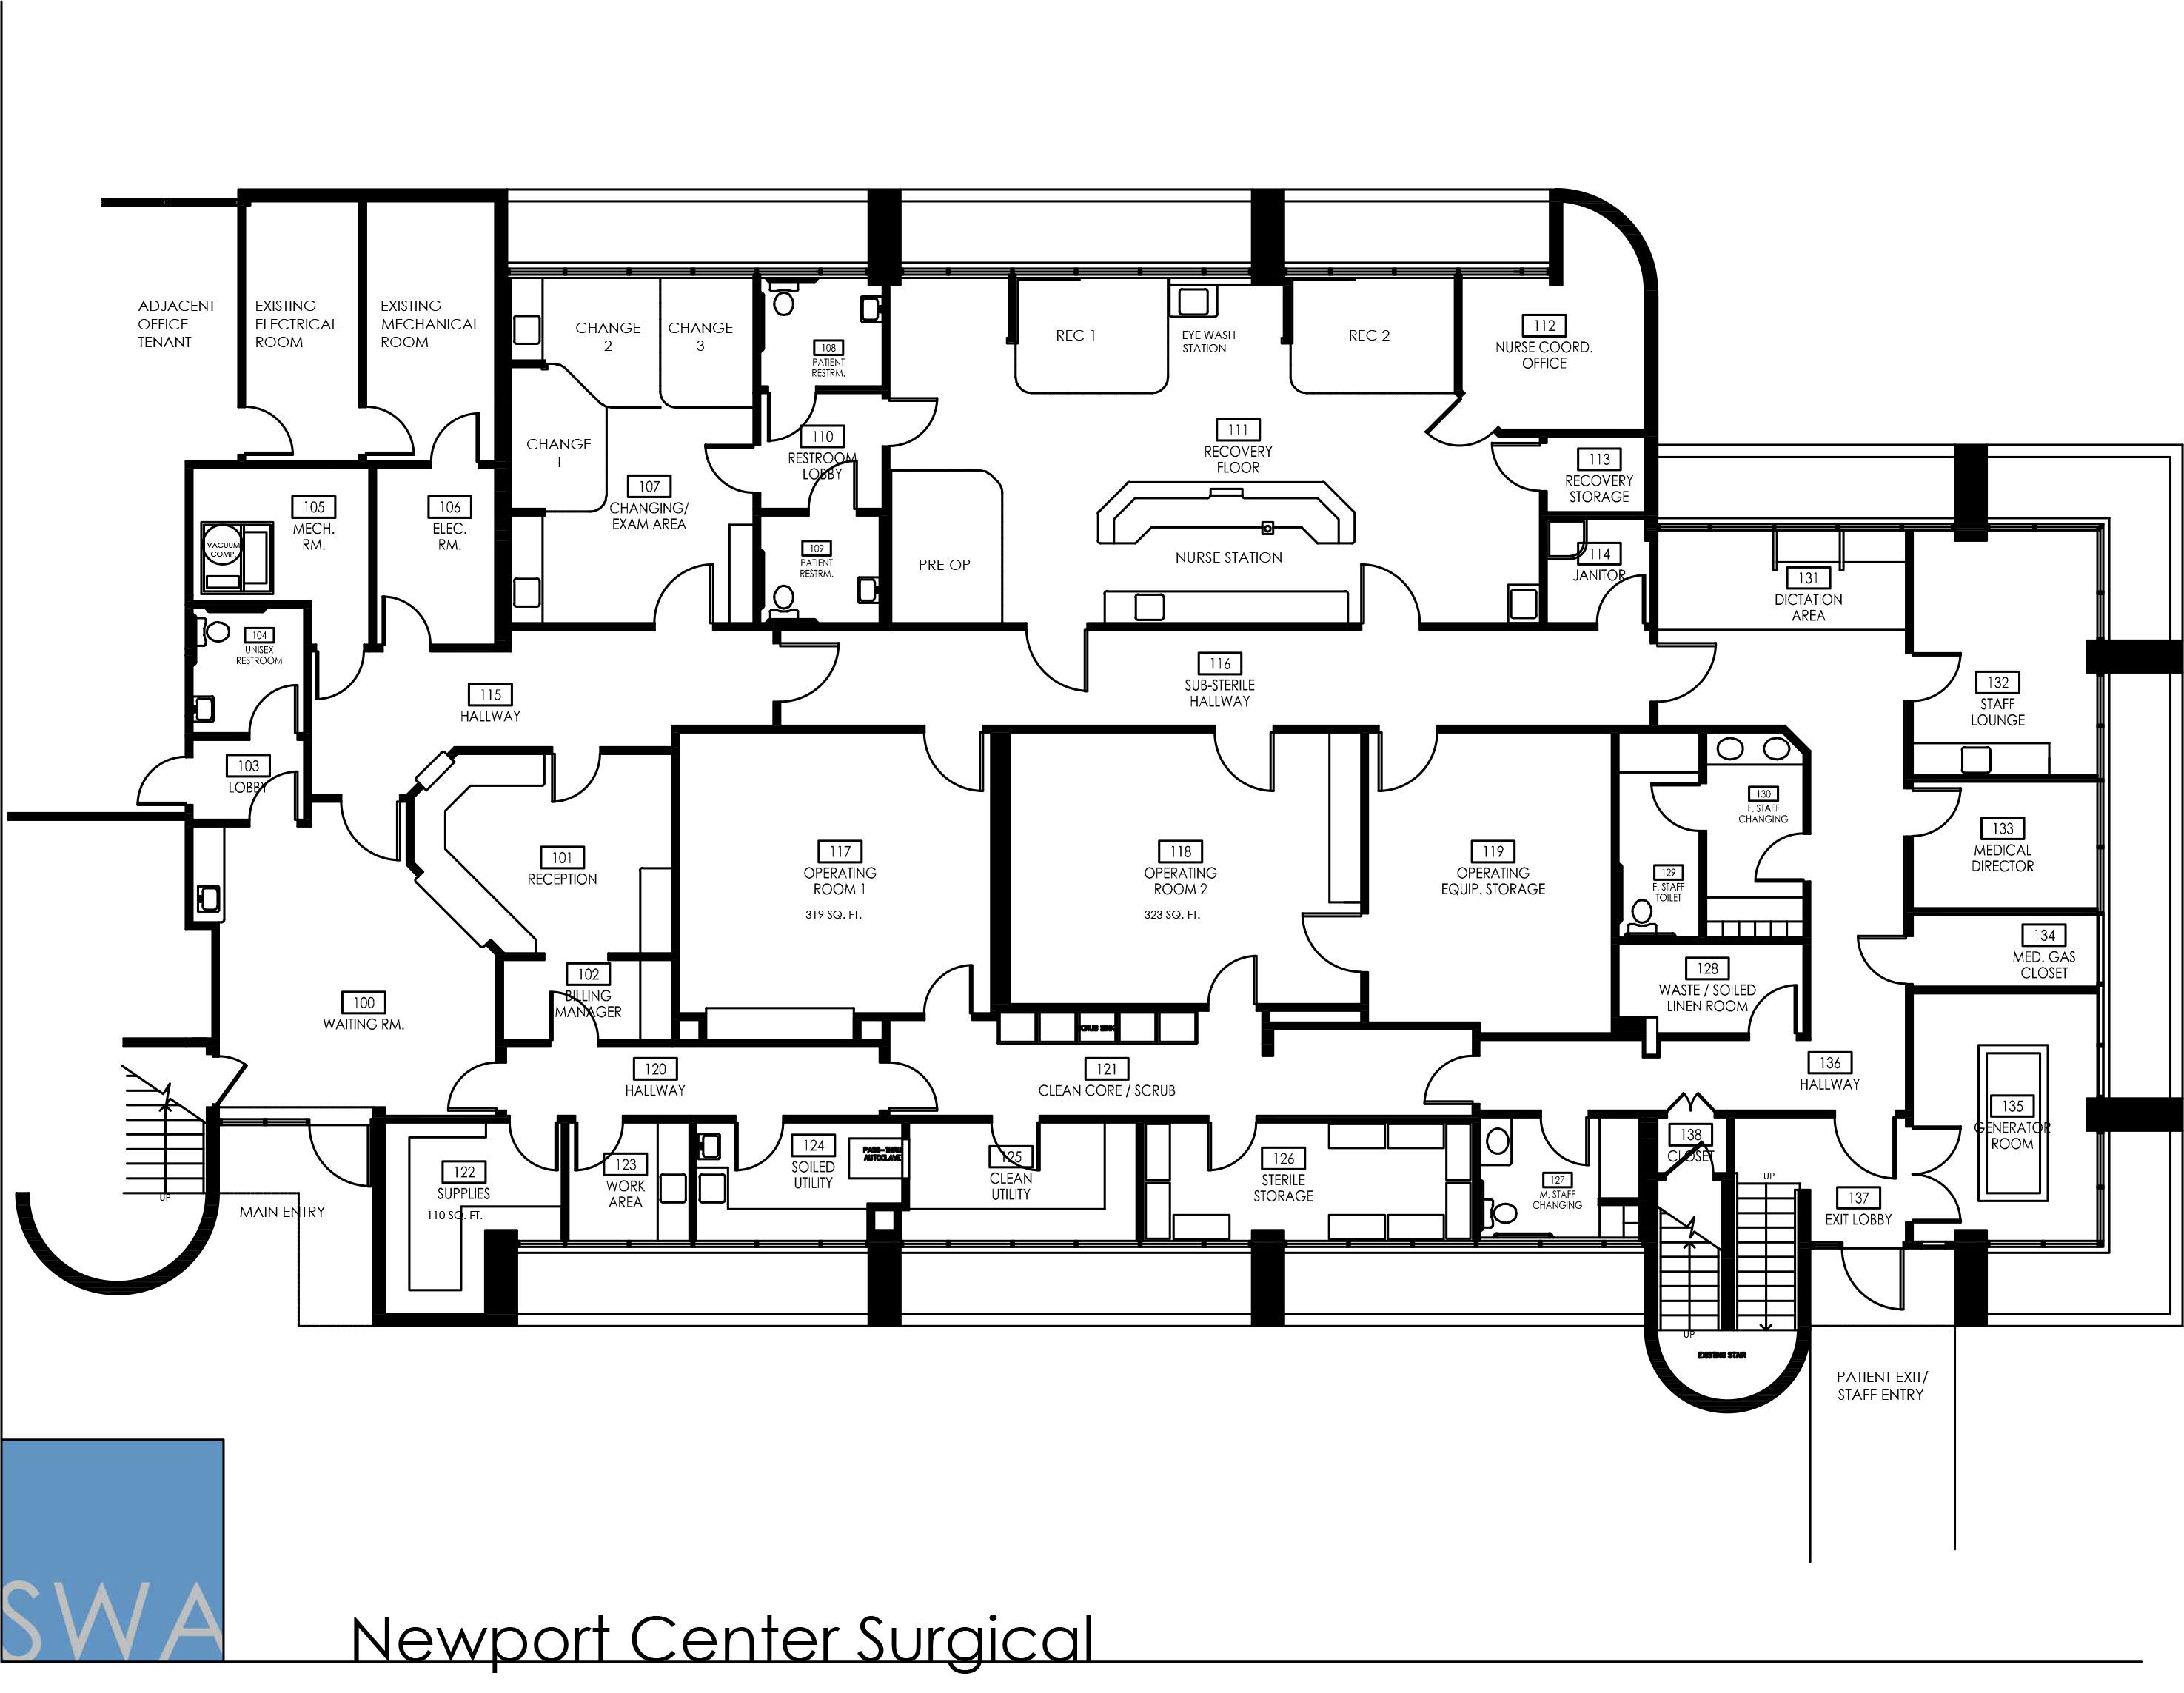 Newport Center Surgical Planos de hospitales, Hospitales